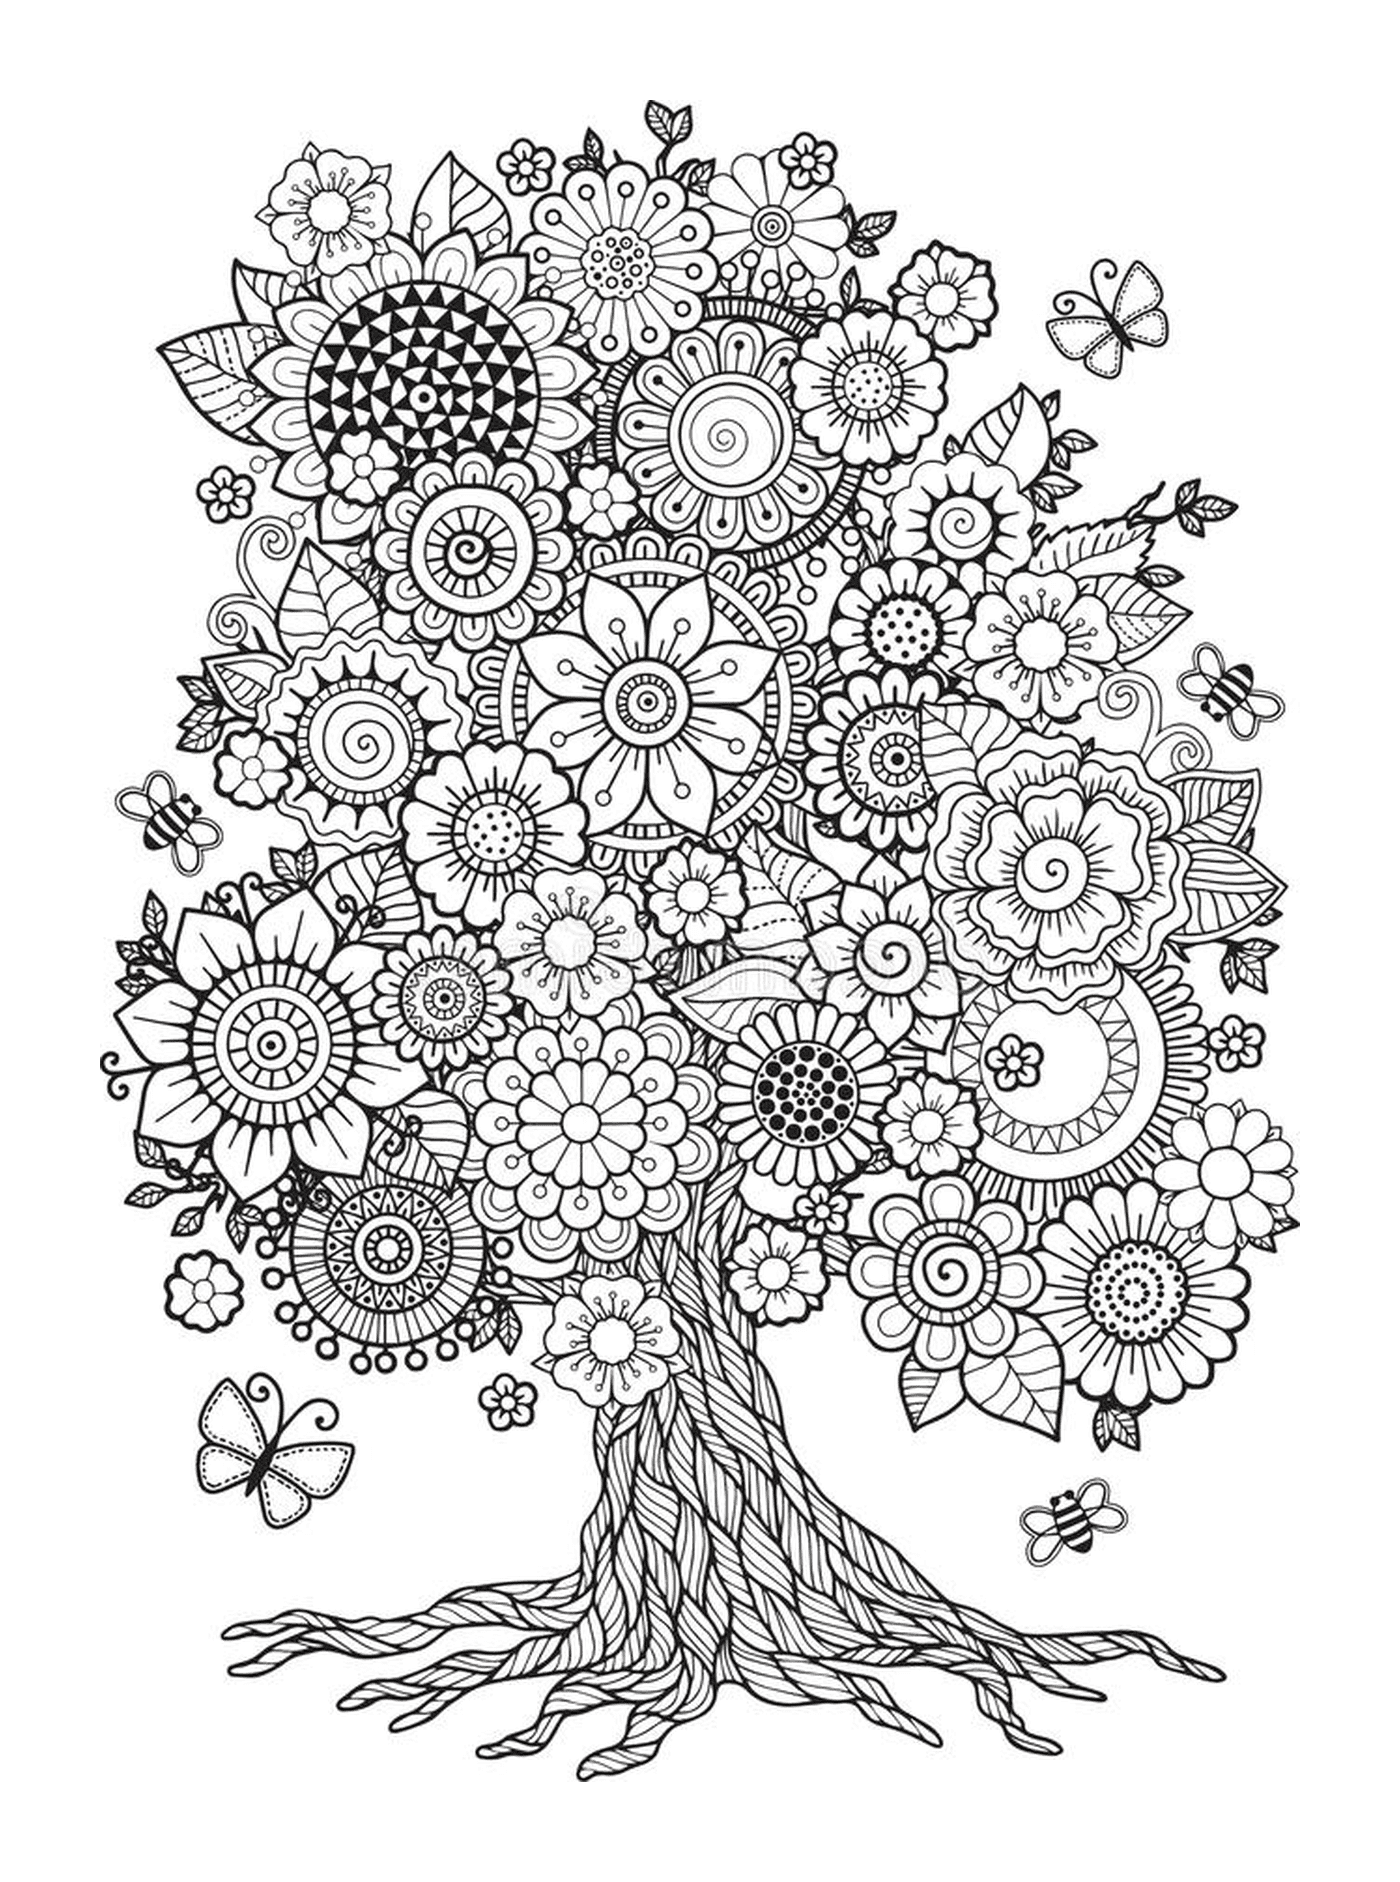  Дерево с весенними цветами 